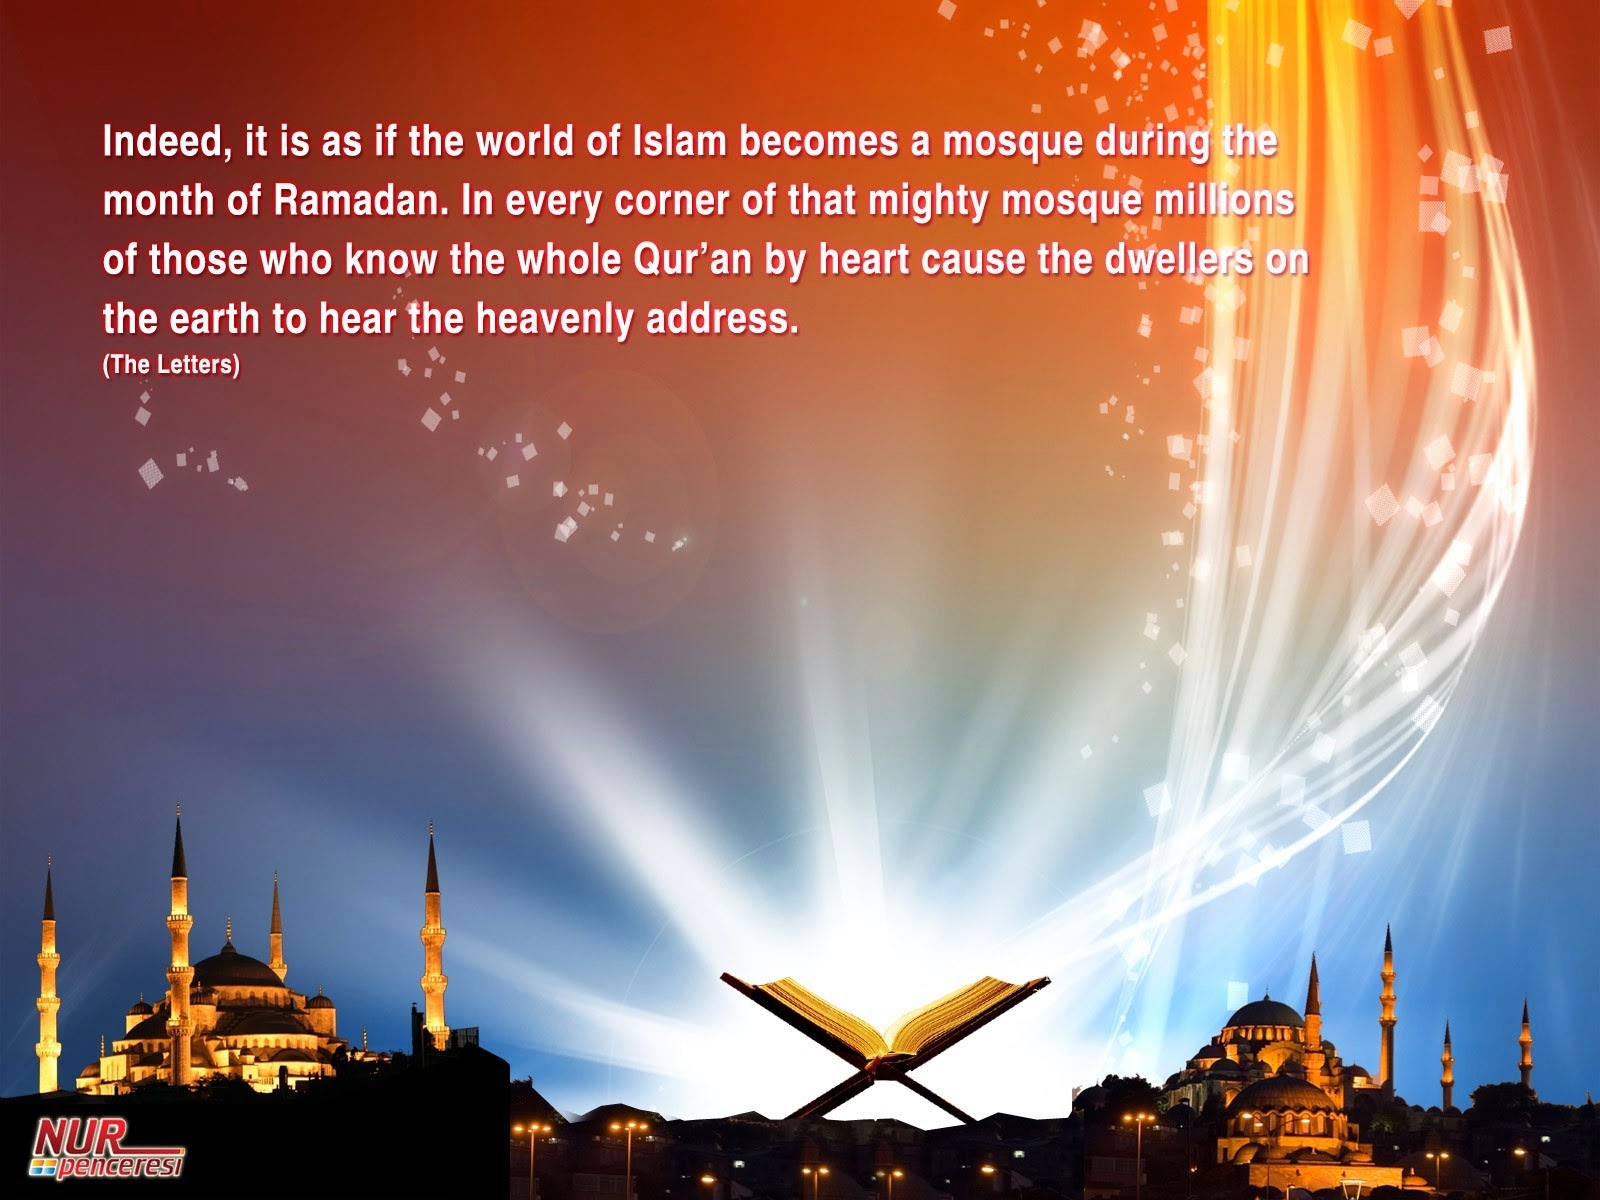 Beauty of Ramadan